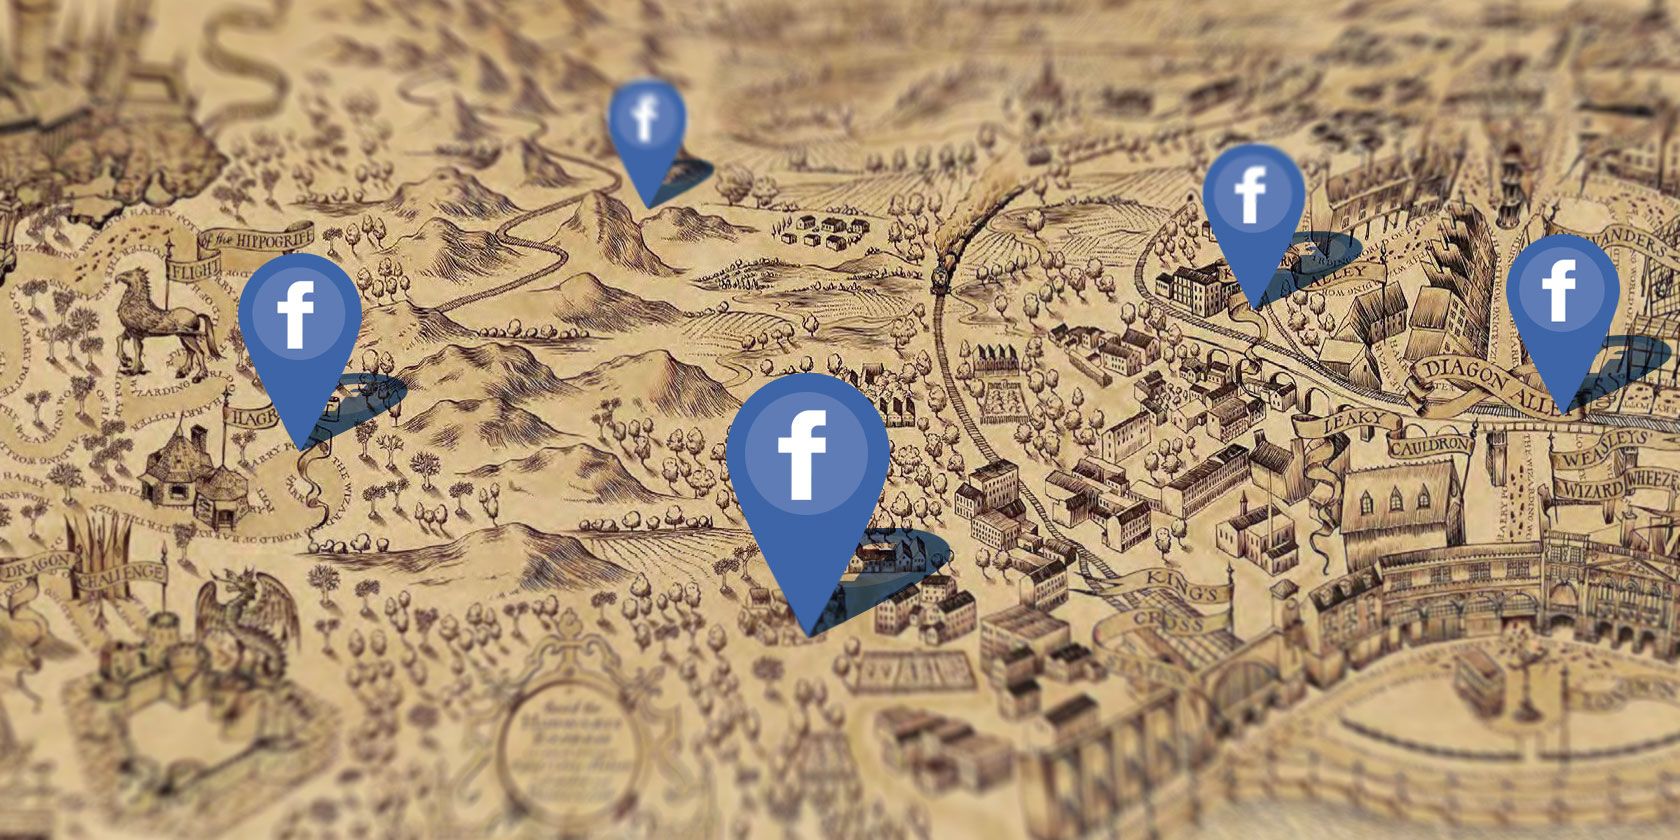 marauders-map-facebook